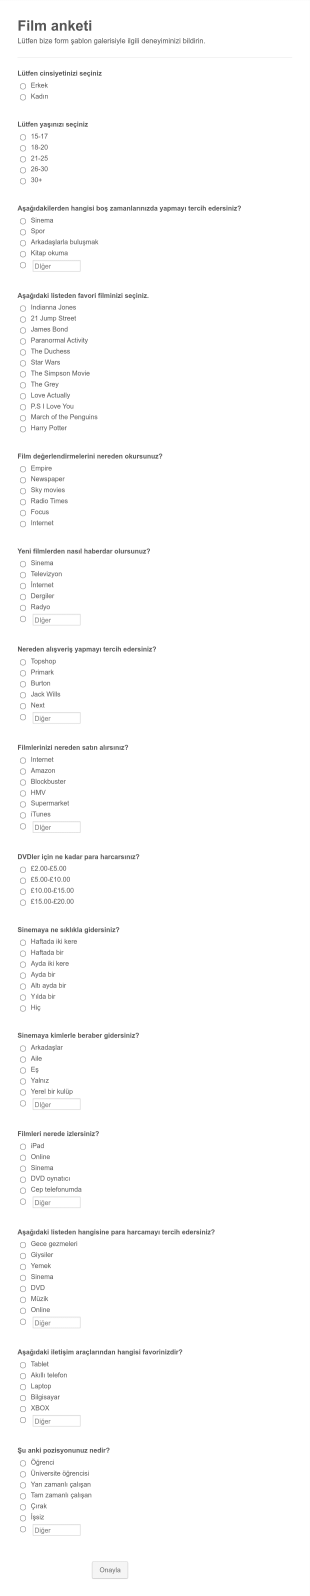 İnternet Sitesi Geribildirim Anketi Form Template